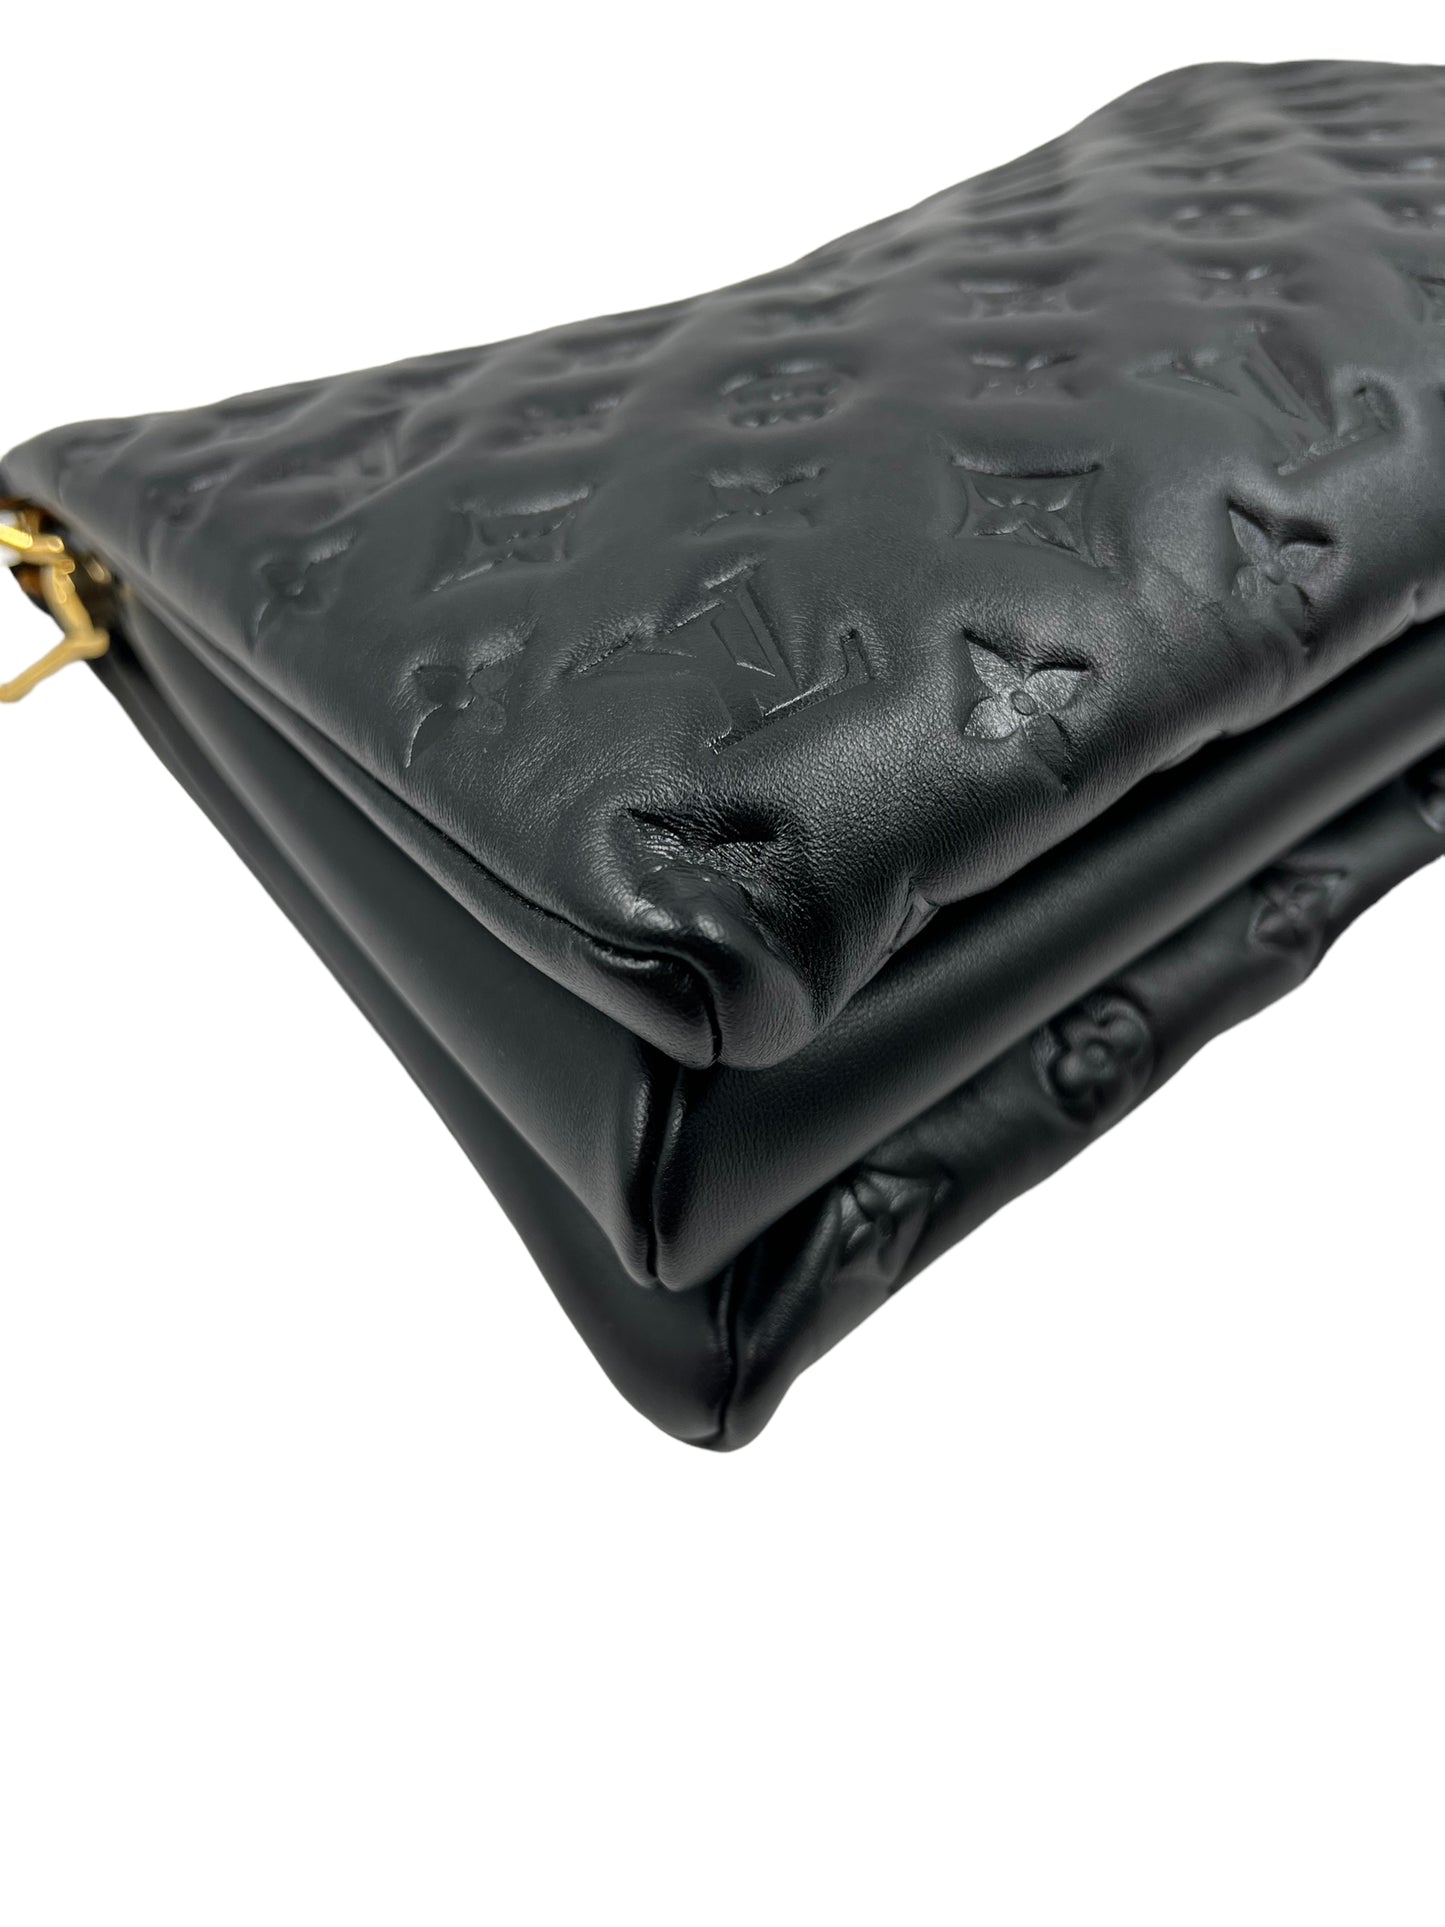 Louis Vuitton Black Lambskin Coussin MM Shoulder Bag